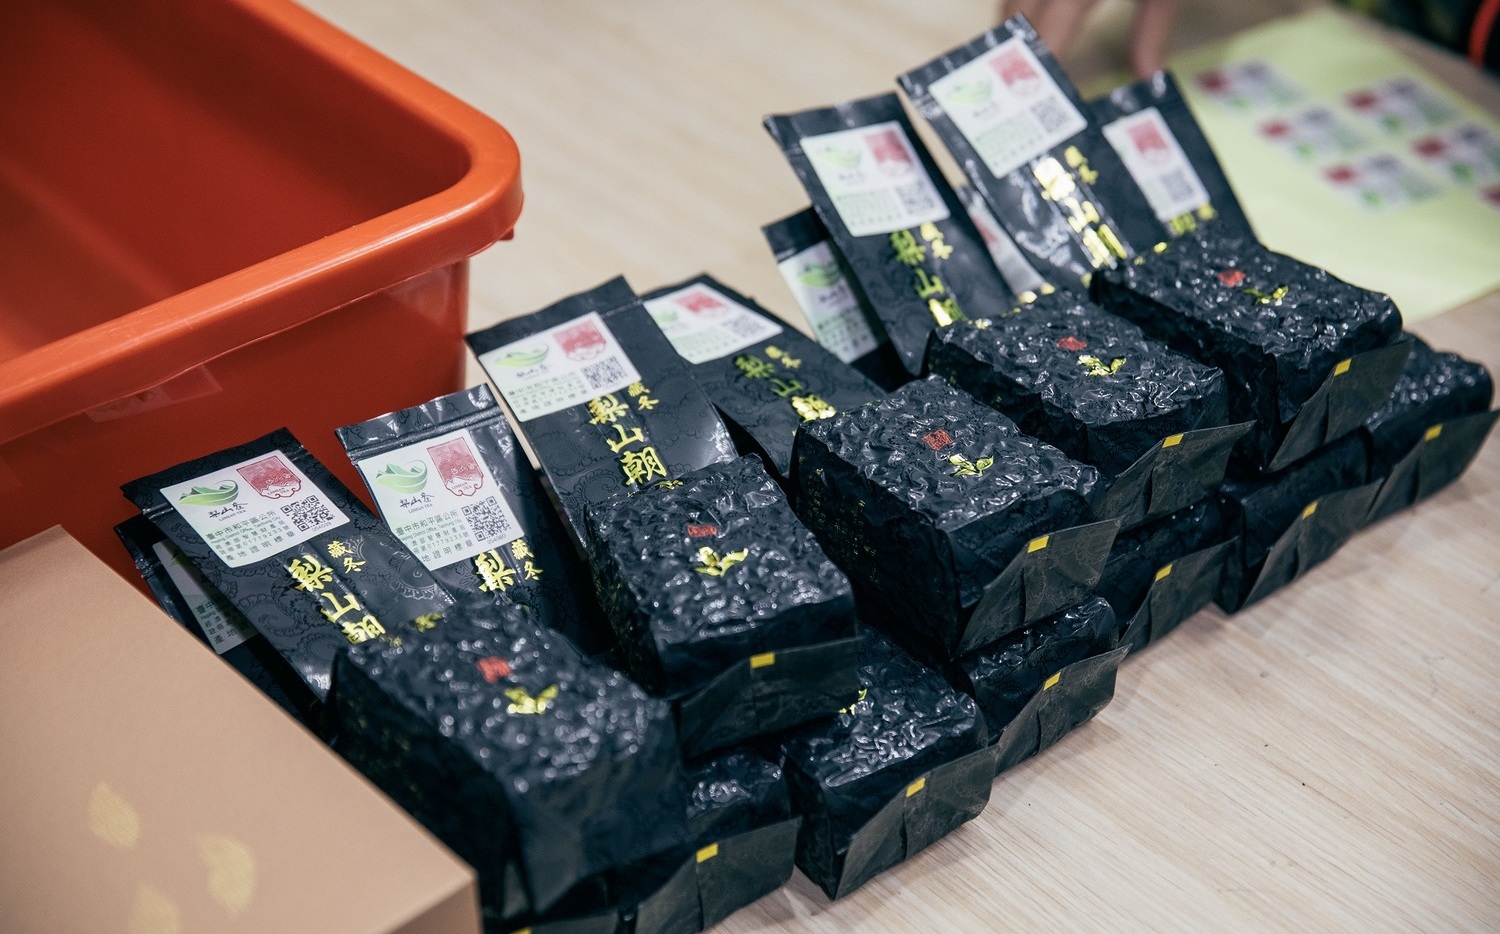 經濟部認證梨山茶產地標章 保障茶農及消費者權益 | 政治 | Newta